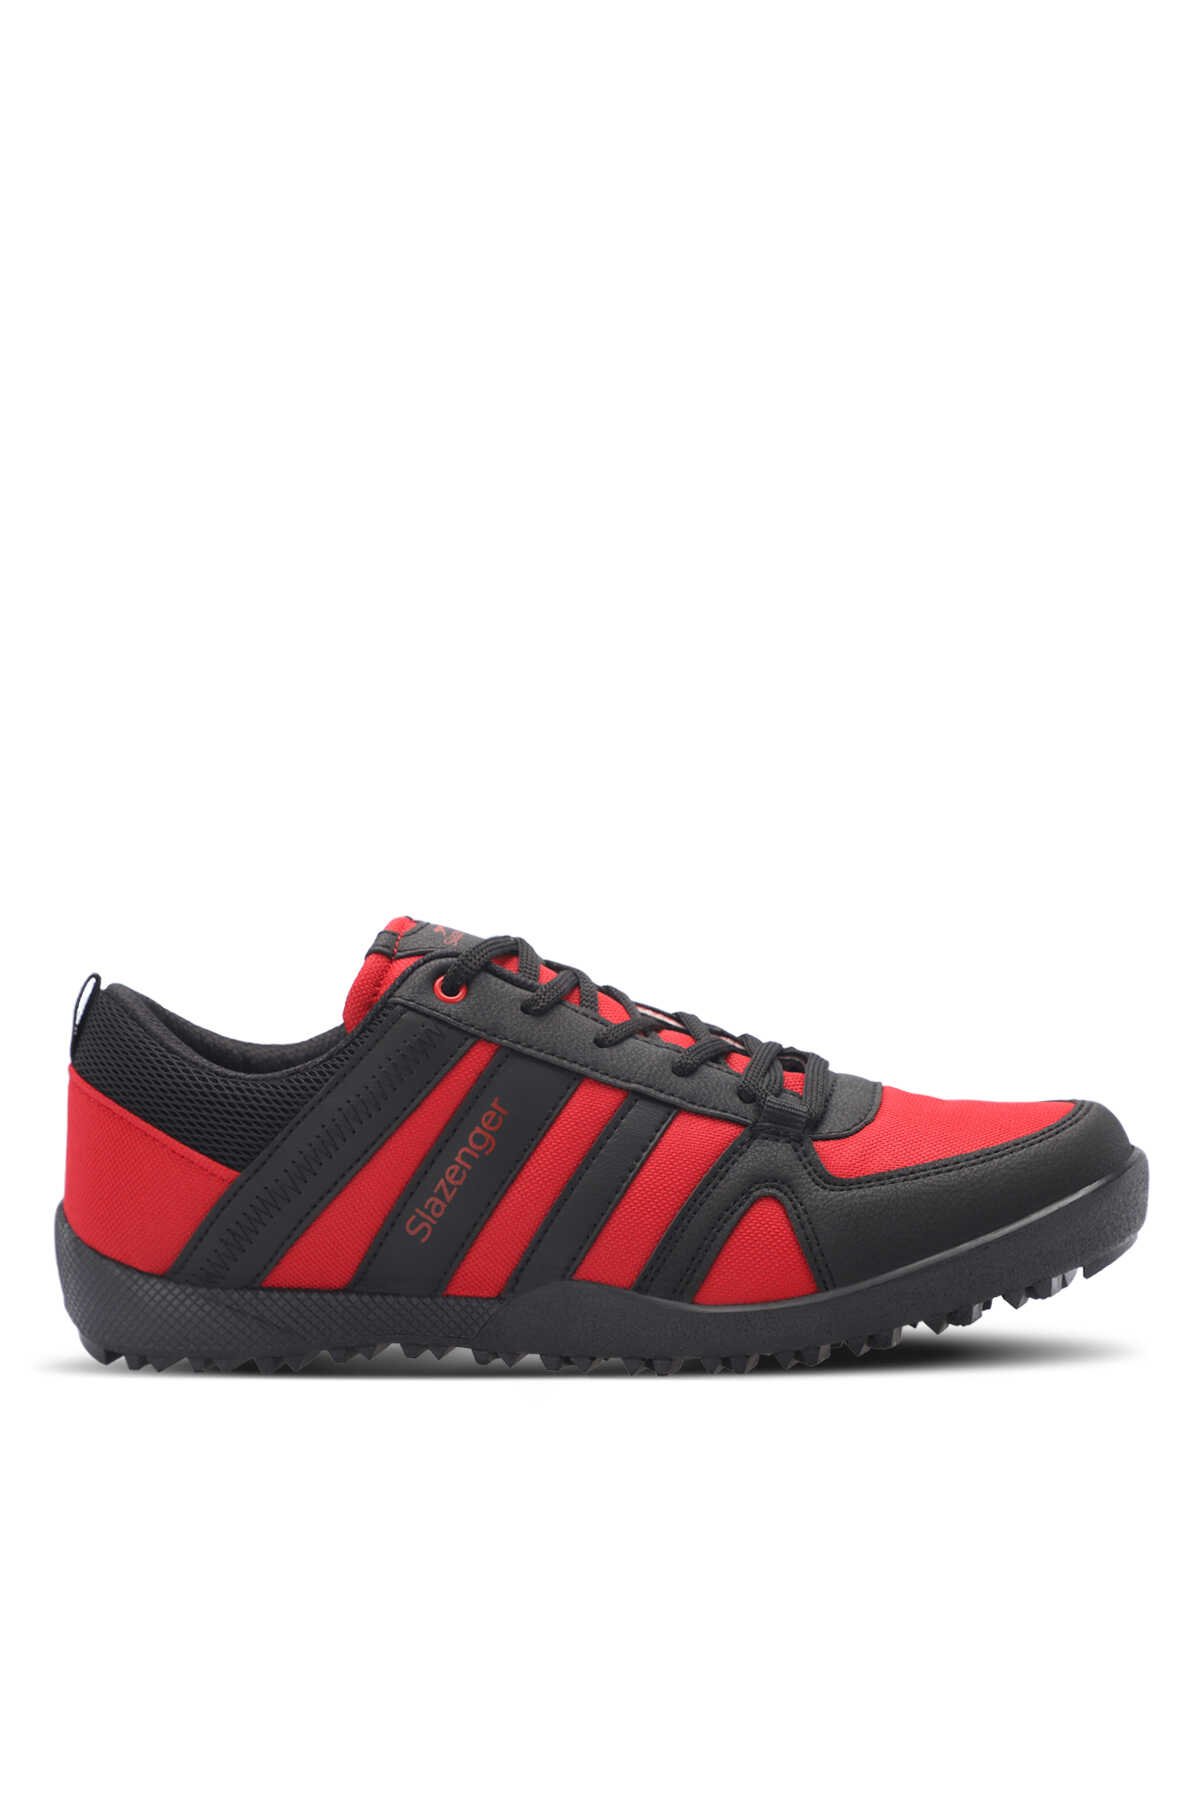 Slazenger - Slazenger ALGAR I Erkek Sneaker Ayakkabı Kırmızı / Siyah